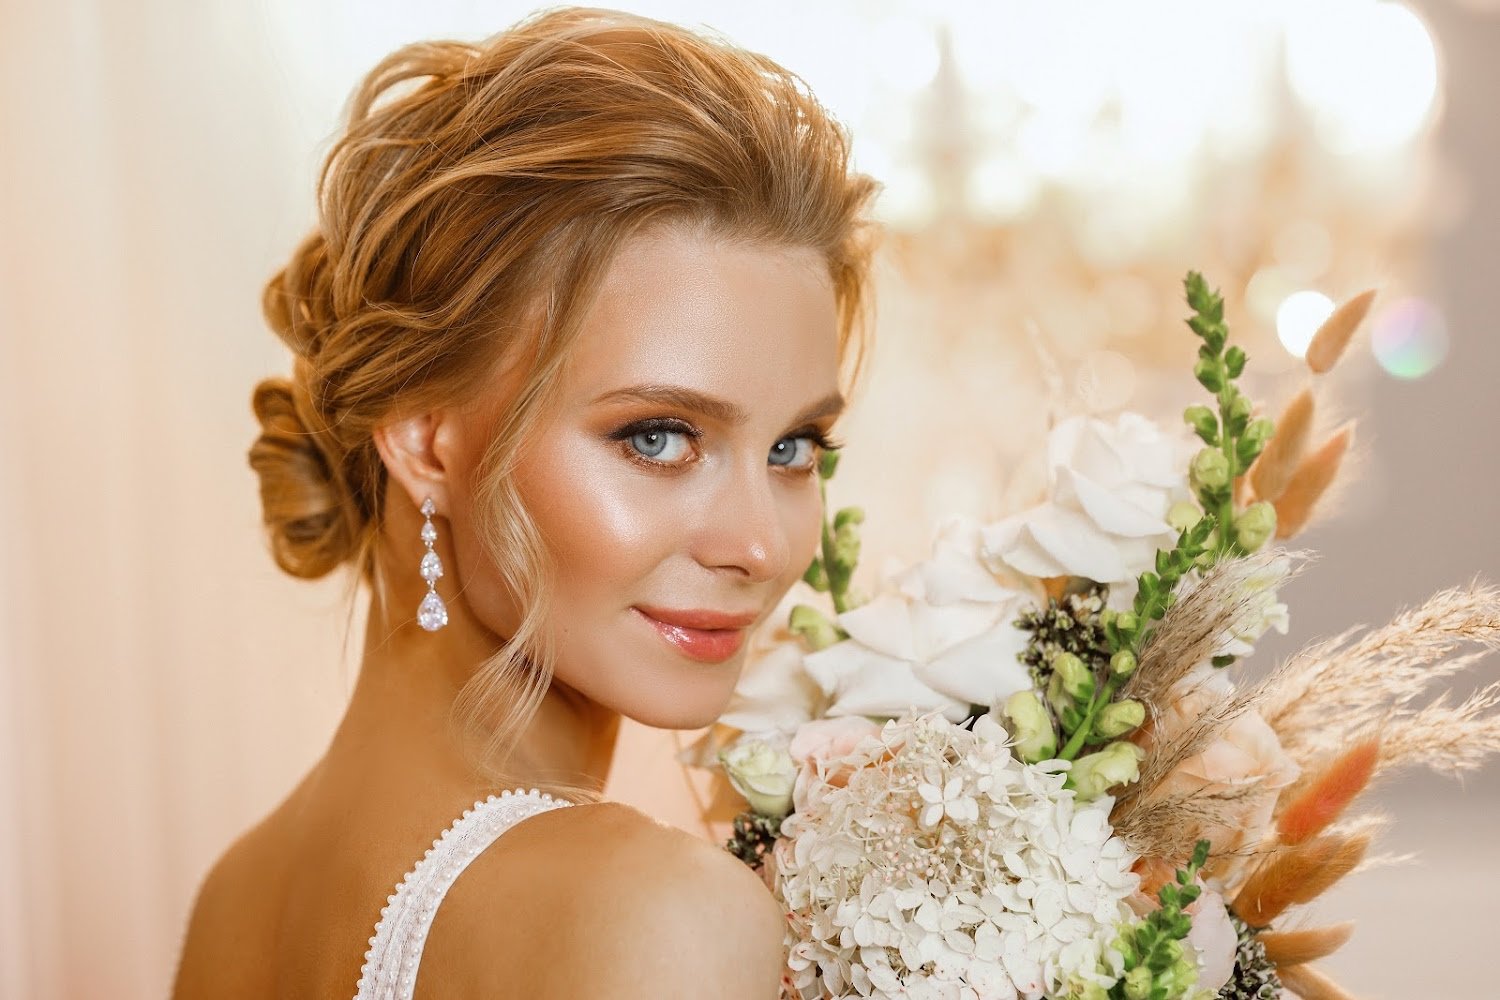 Блондинка, брюнетка, шатенка или рыжая? подбираем свадебный макияж для зеленых глаз. фото и подробные советы